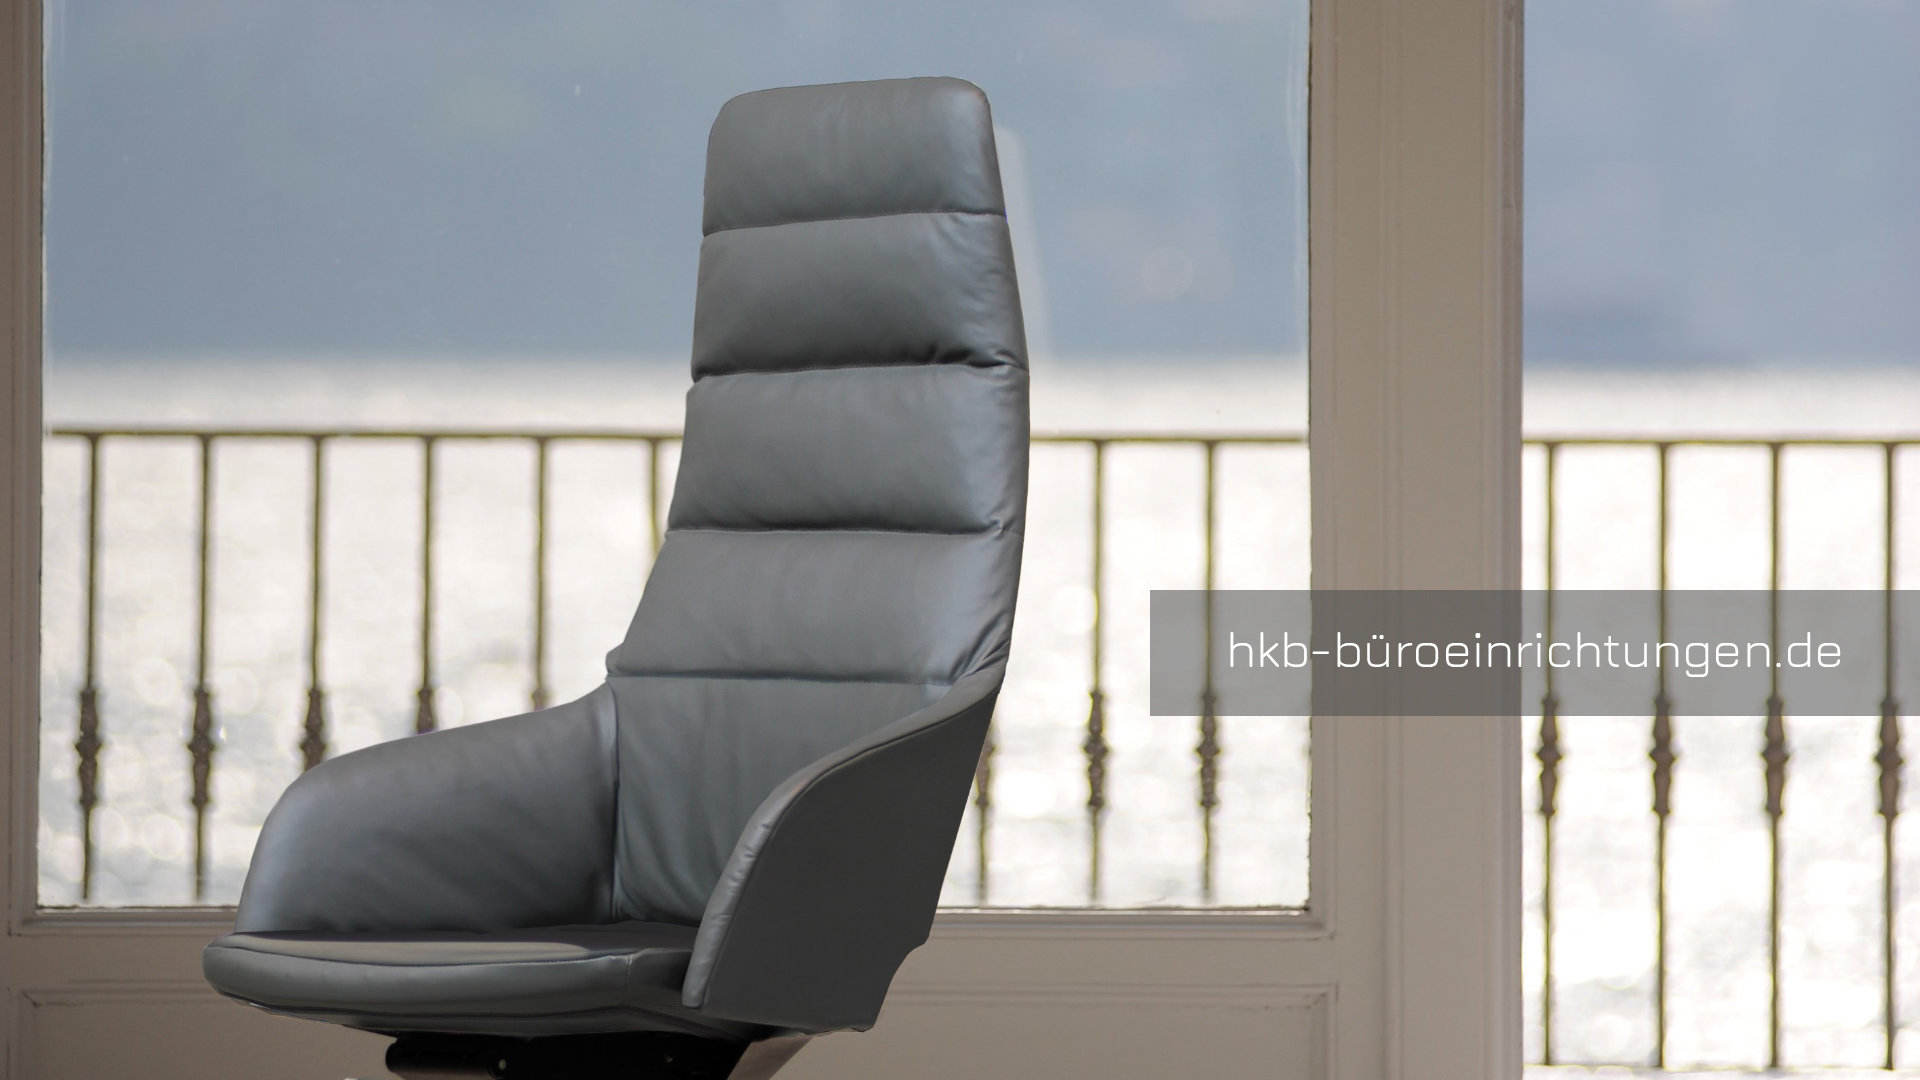 Chefsessel Ledersessel Bürosessel Leder Sessel Lederbezug in weiß Chefsessel mit Armlehnen